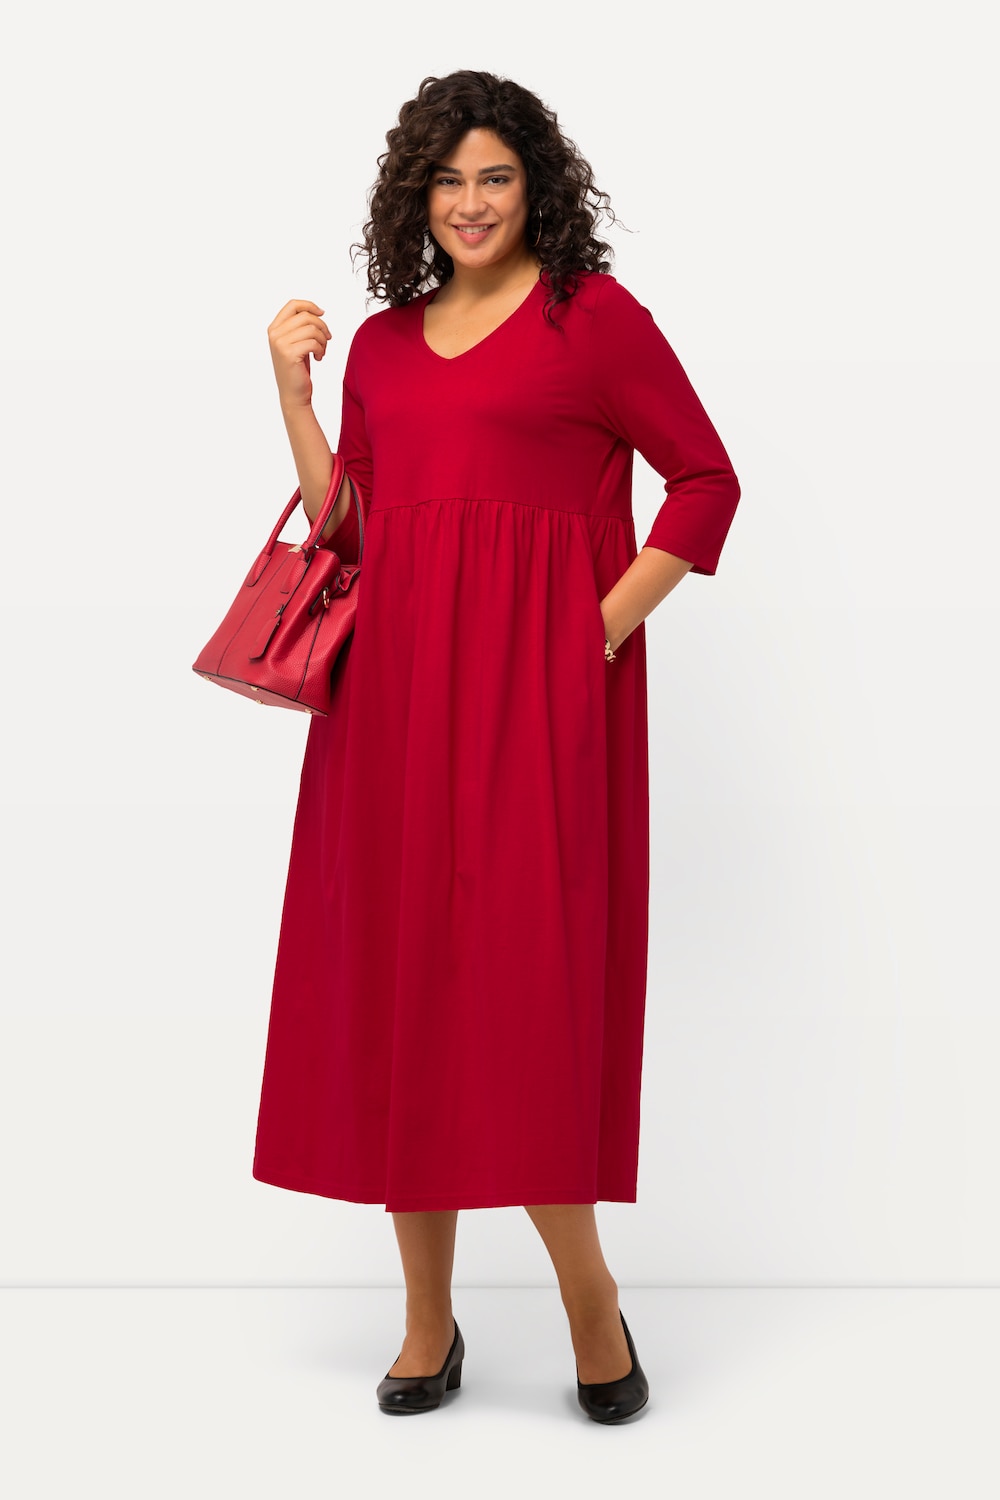 Grote Maten Jersey jurk, Dames, rood, Maat: 42/44, Katoen, Ulla Popken